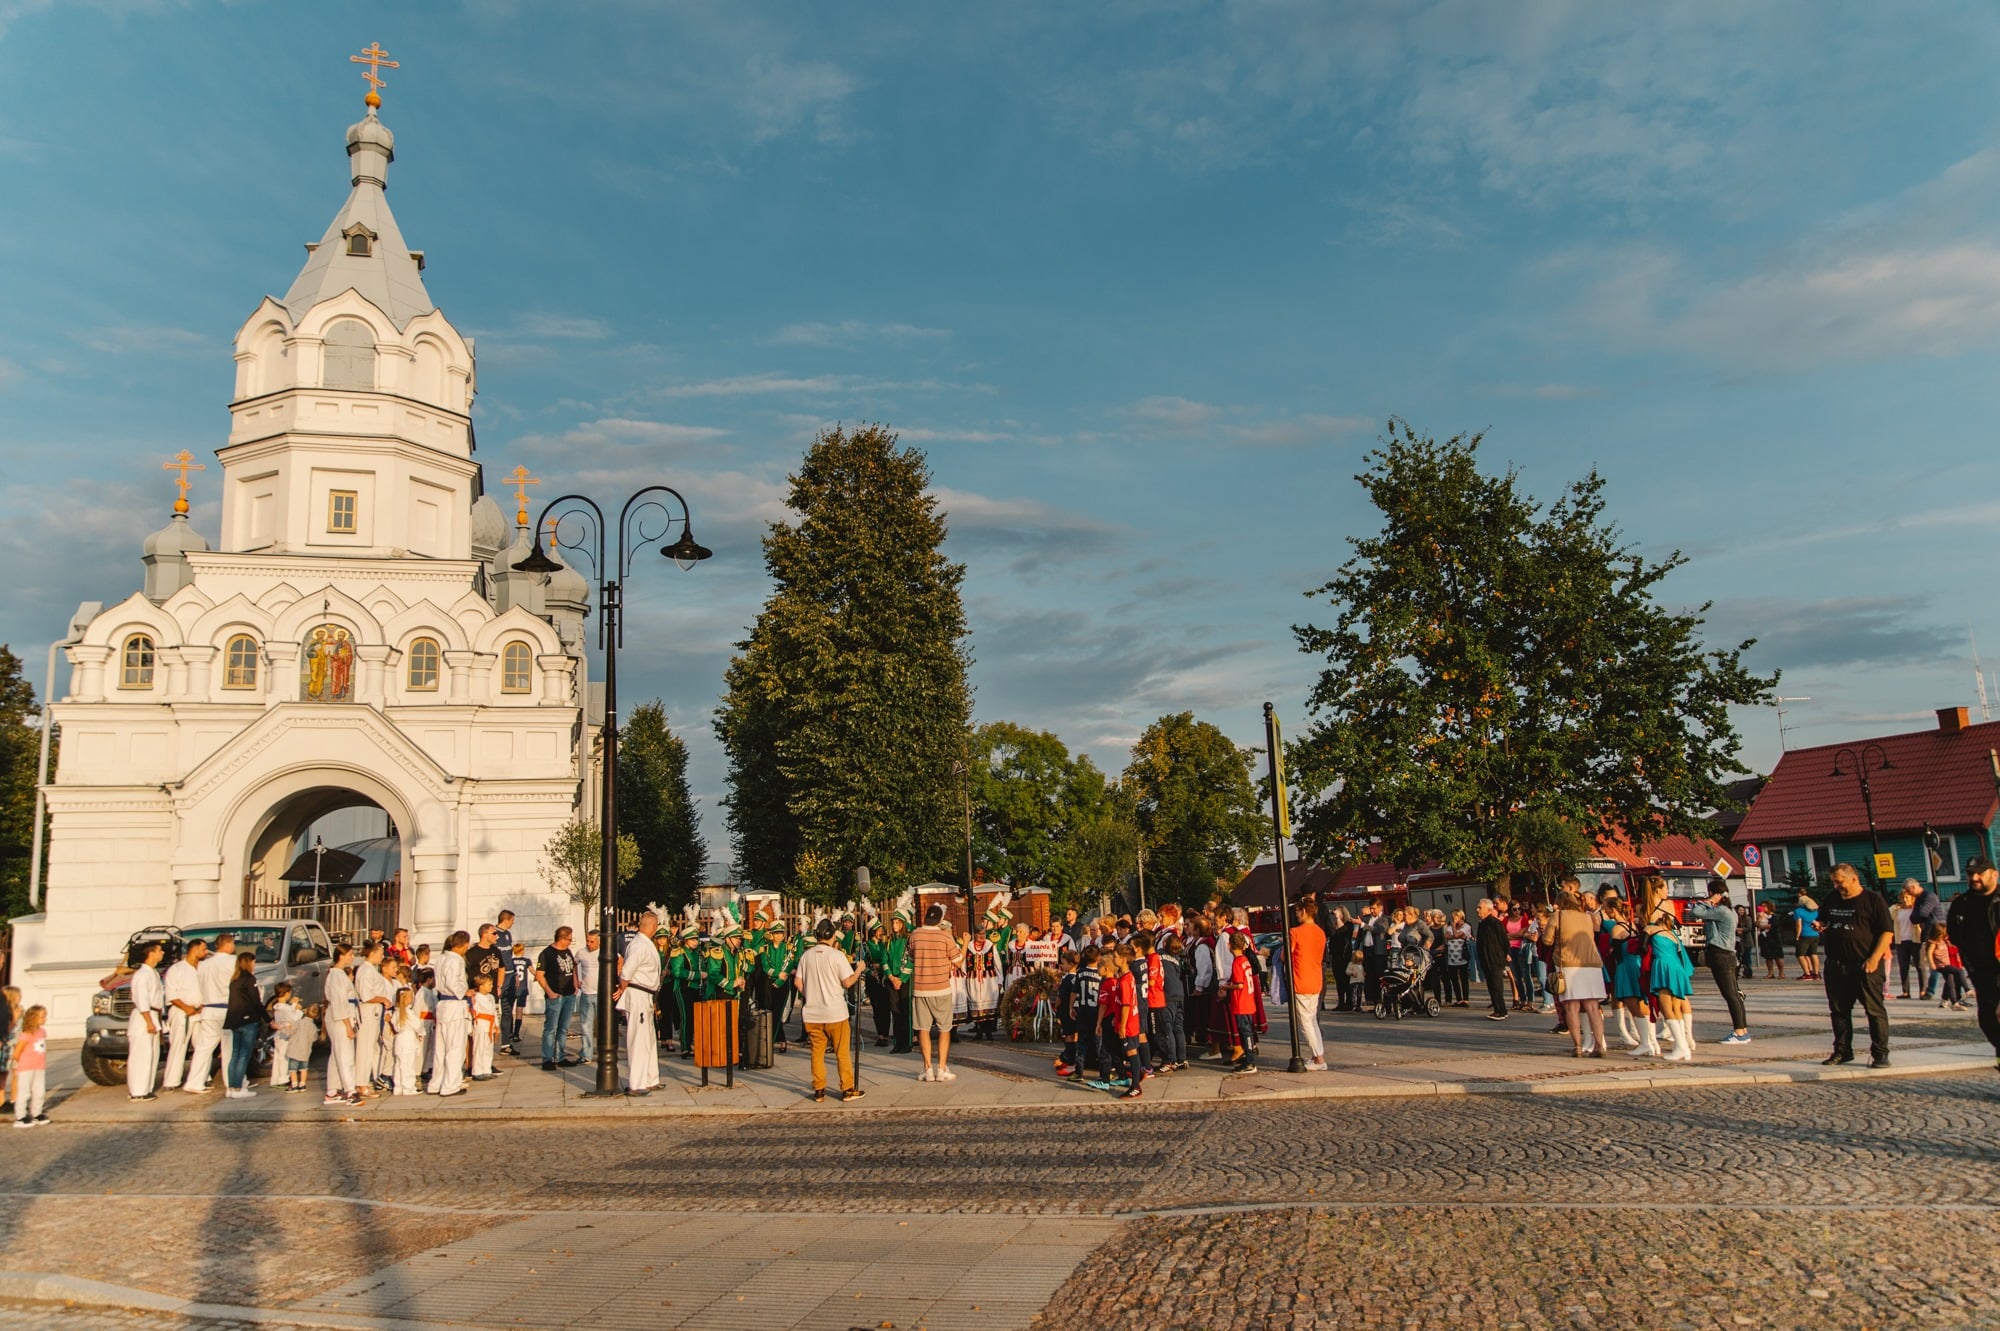 Zdjęcia do teledysku kręcone były w całym Wasilkowie- tutaj scena przed Cerkwią 